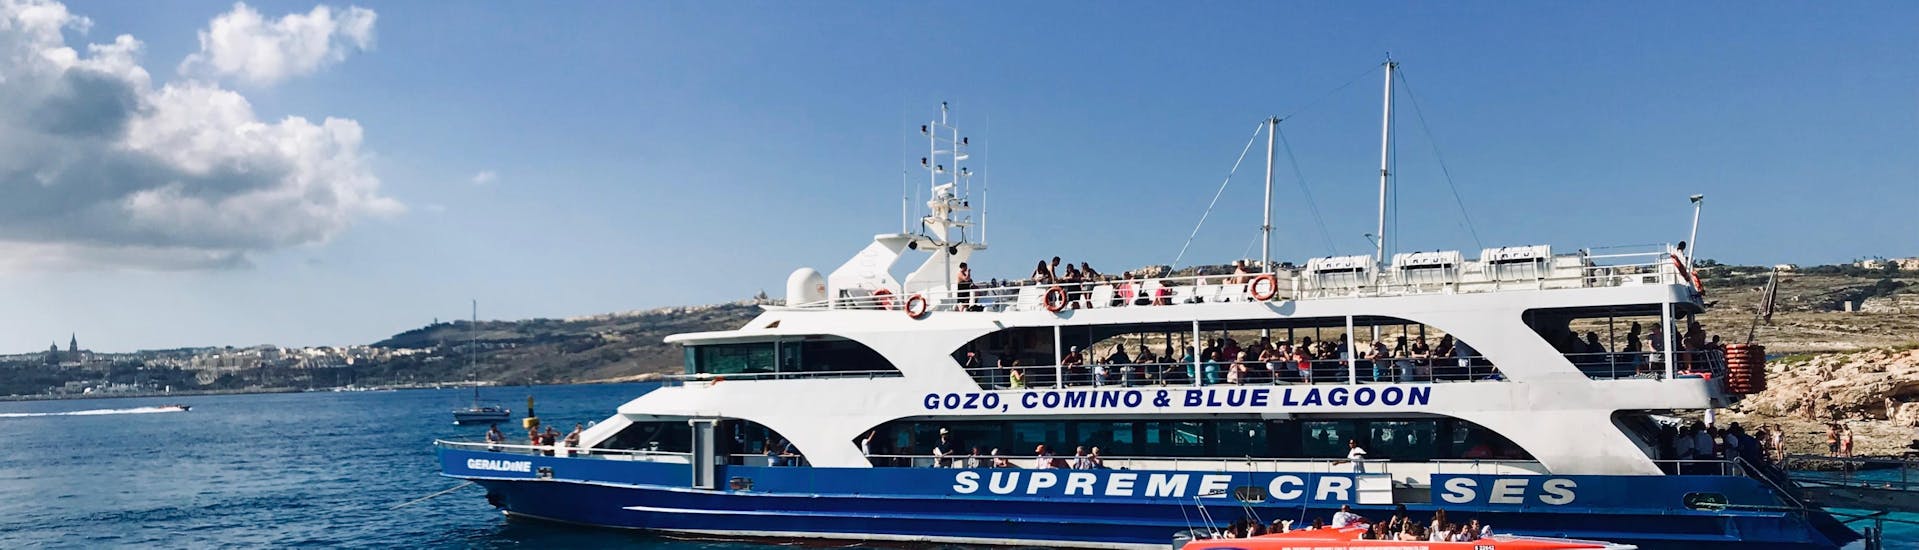 Bateau de Supreme Travel Malta lors d'une excursion en bateau vers le Blue Lagoon.